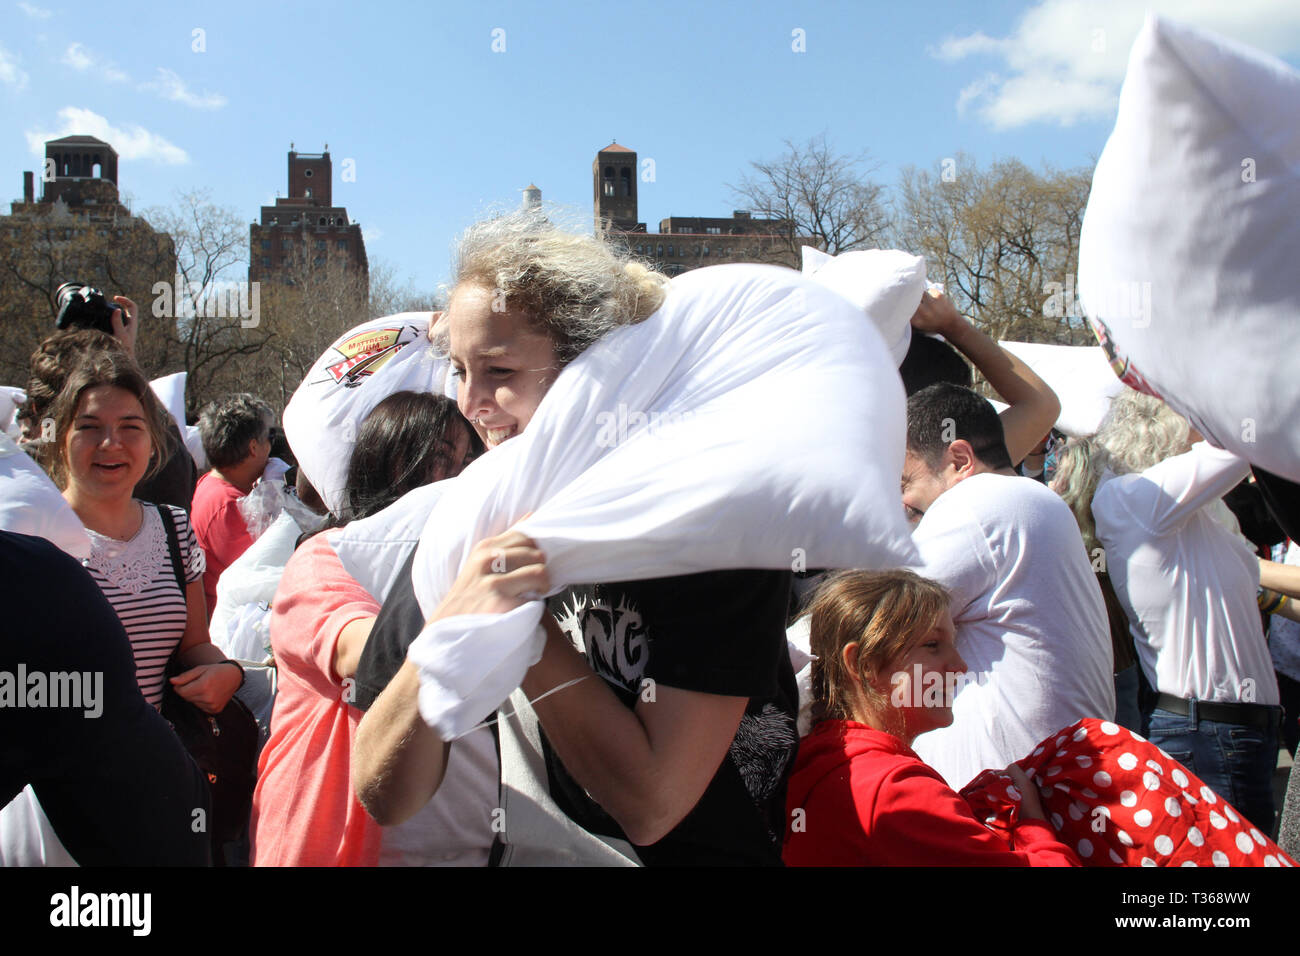 6 avril 2019 - New York, New York, États-Unis - (New York) Plus grand Pillow fight organisé chaque année à Washington Square Park. Les gens viennent de partout pour participer à l'événement. (Crédit Image : © Bruce Cotler/Globe Photos via Zuma sur le fil) Banque D'Images